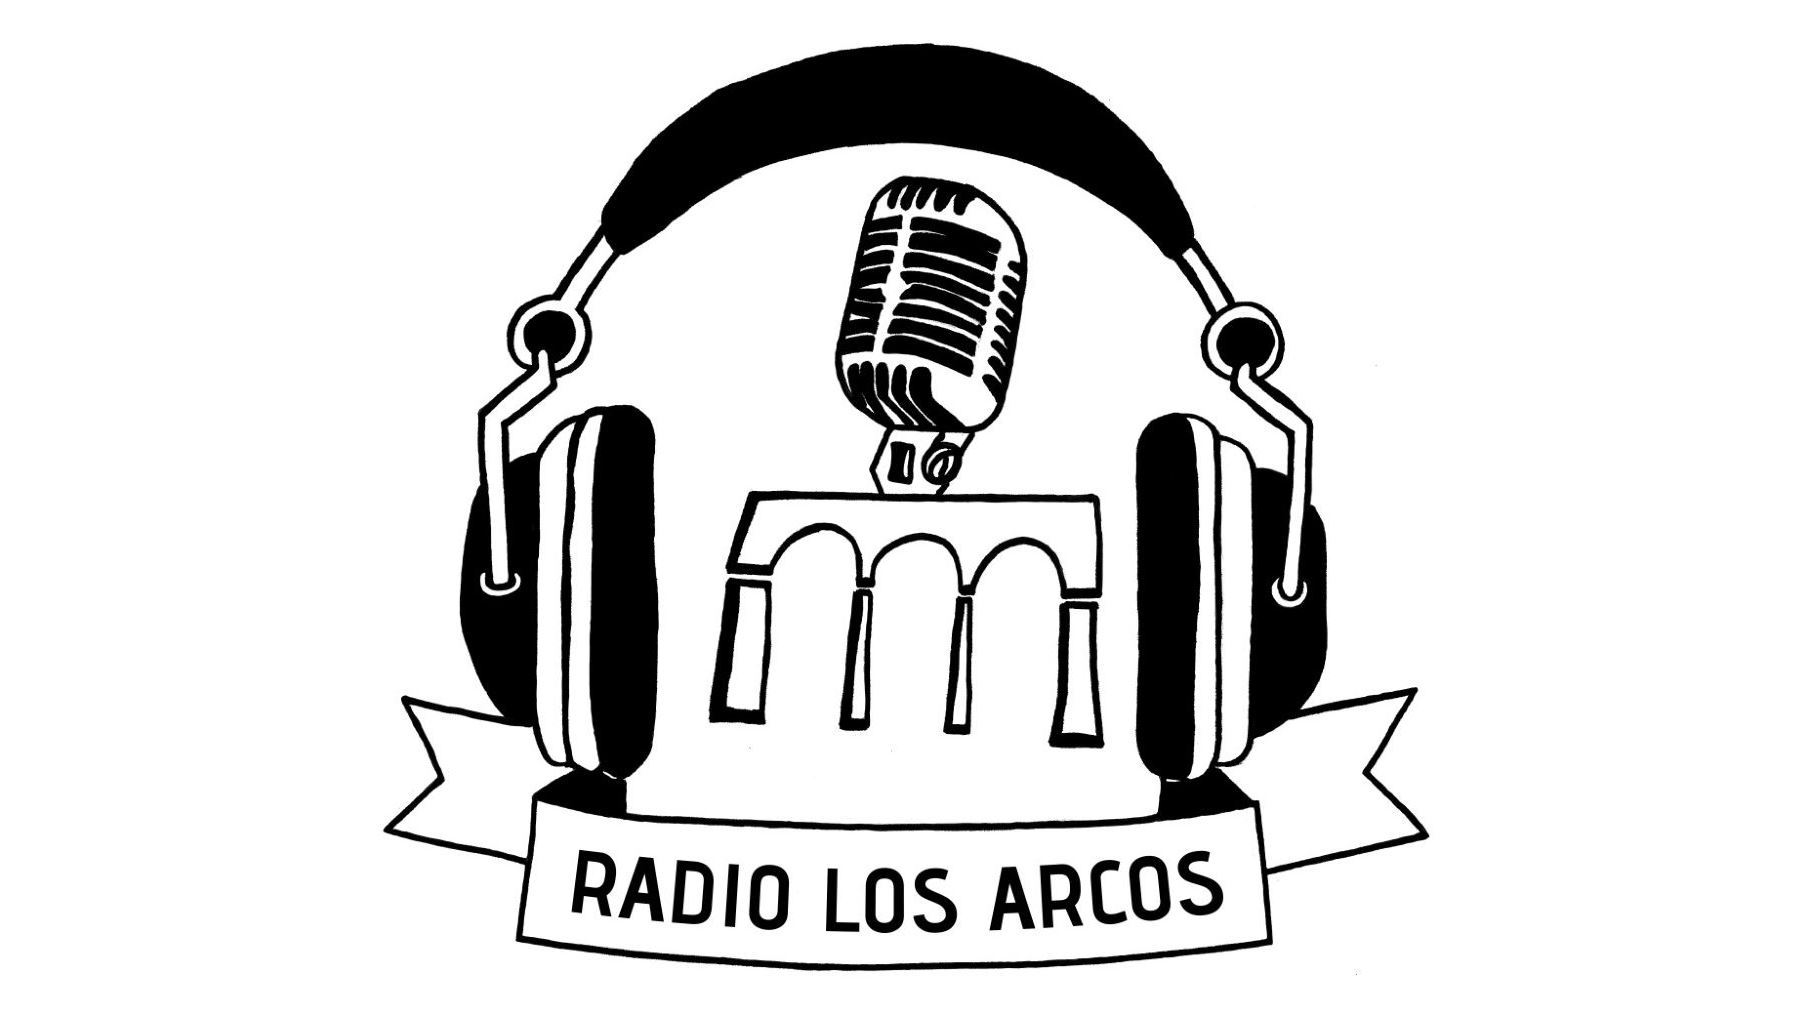 Featured image for “La radio como herramienta para educar en igualdad de oportunidades”